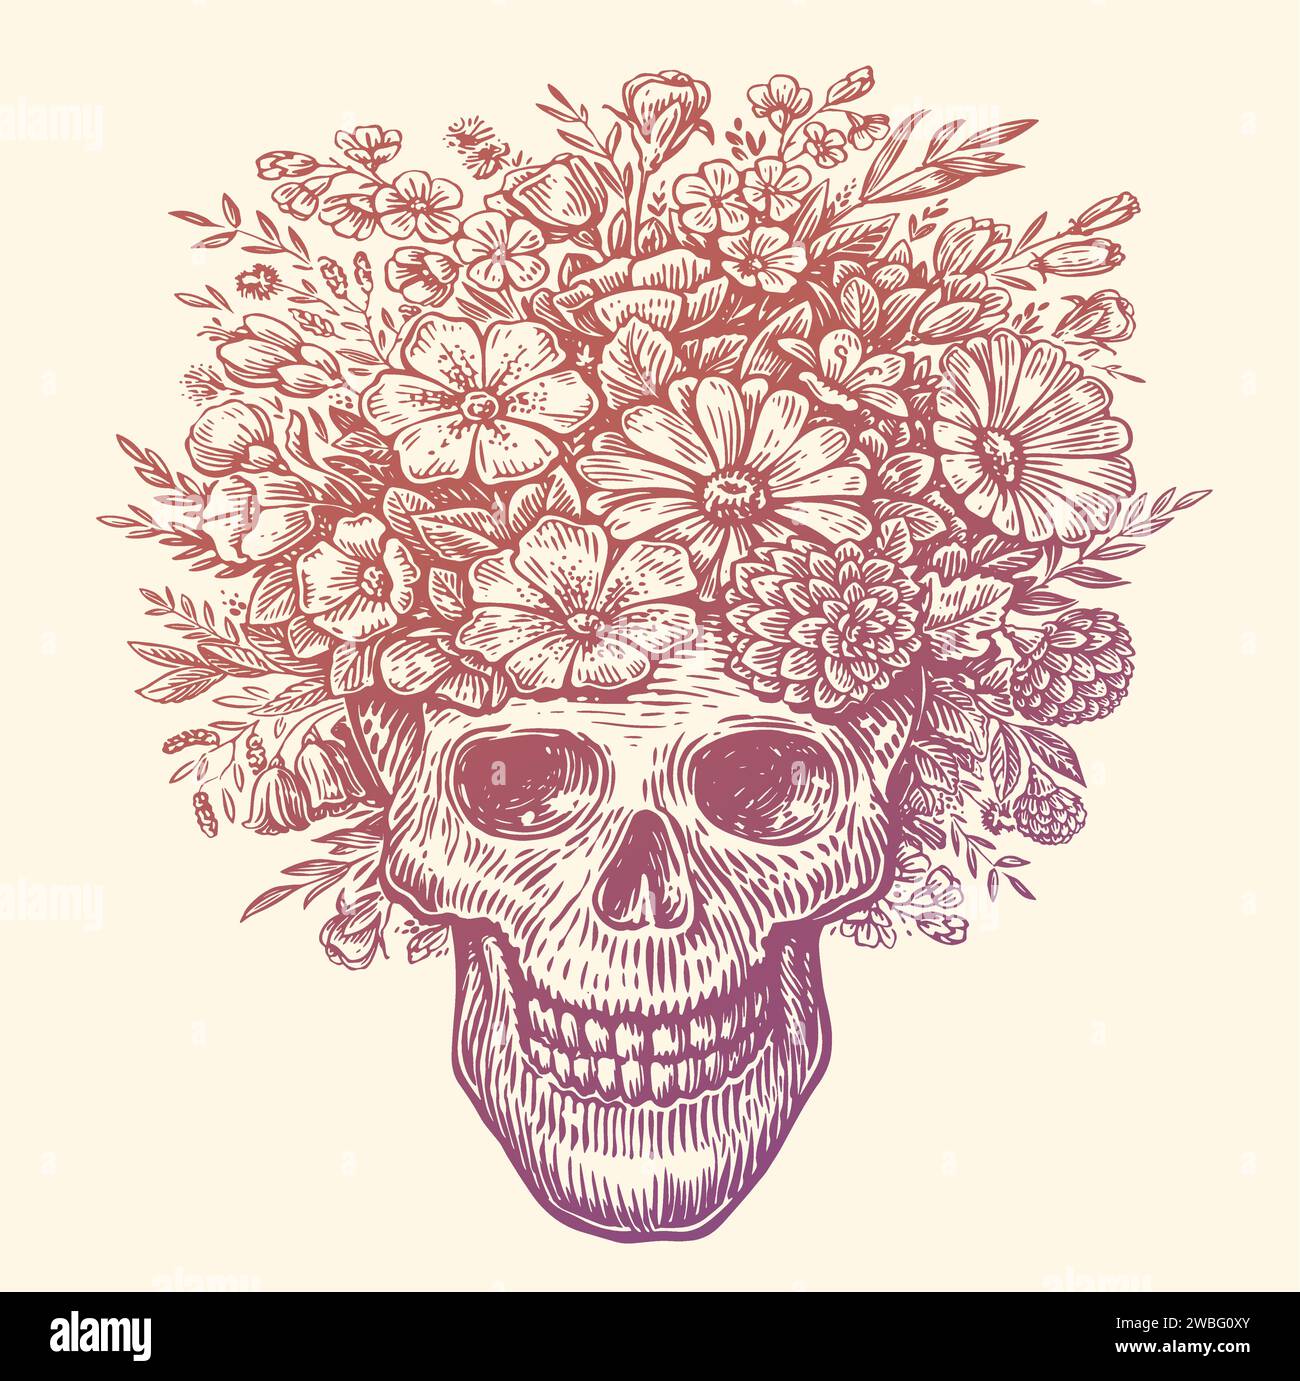 Teschio umano con corona di fiori sulla testa. Illustrazione vettoriale disegnata a mano Illustrazione Vettoriale